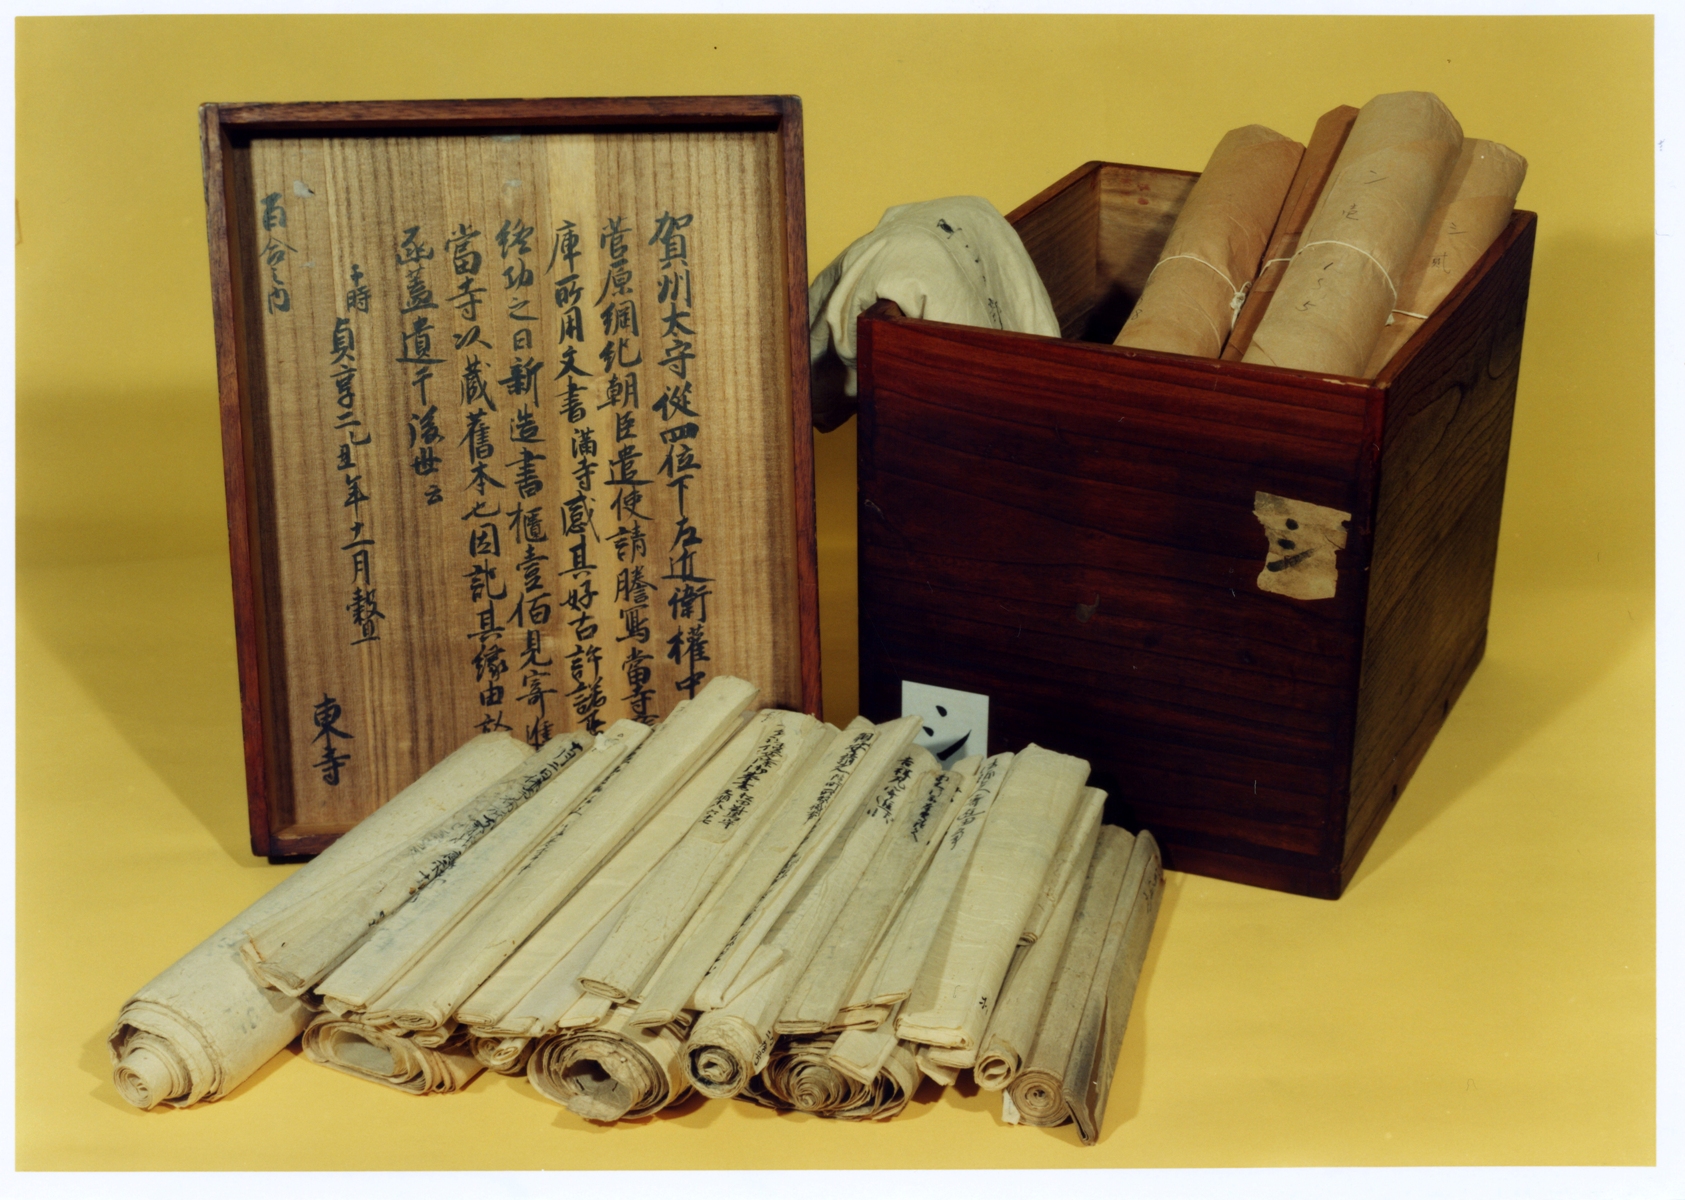 ・東寺百合文書 桐箱（シ函）　江戸時代から東寺百合文書が収められていた桐箱。加賀藩主前田綱紀から1685年（貞享2）に寄進されたもの。この箱が百個あることから「百合」の名がついた。